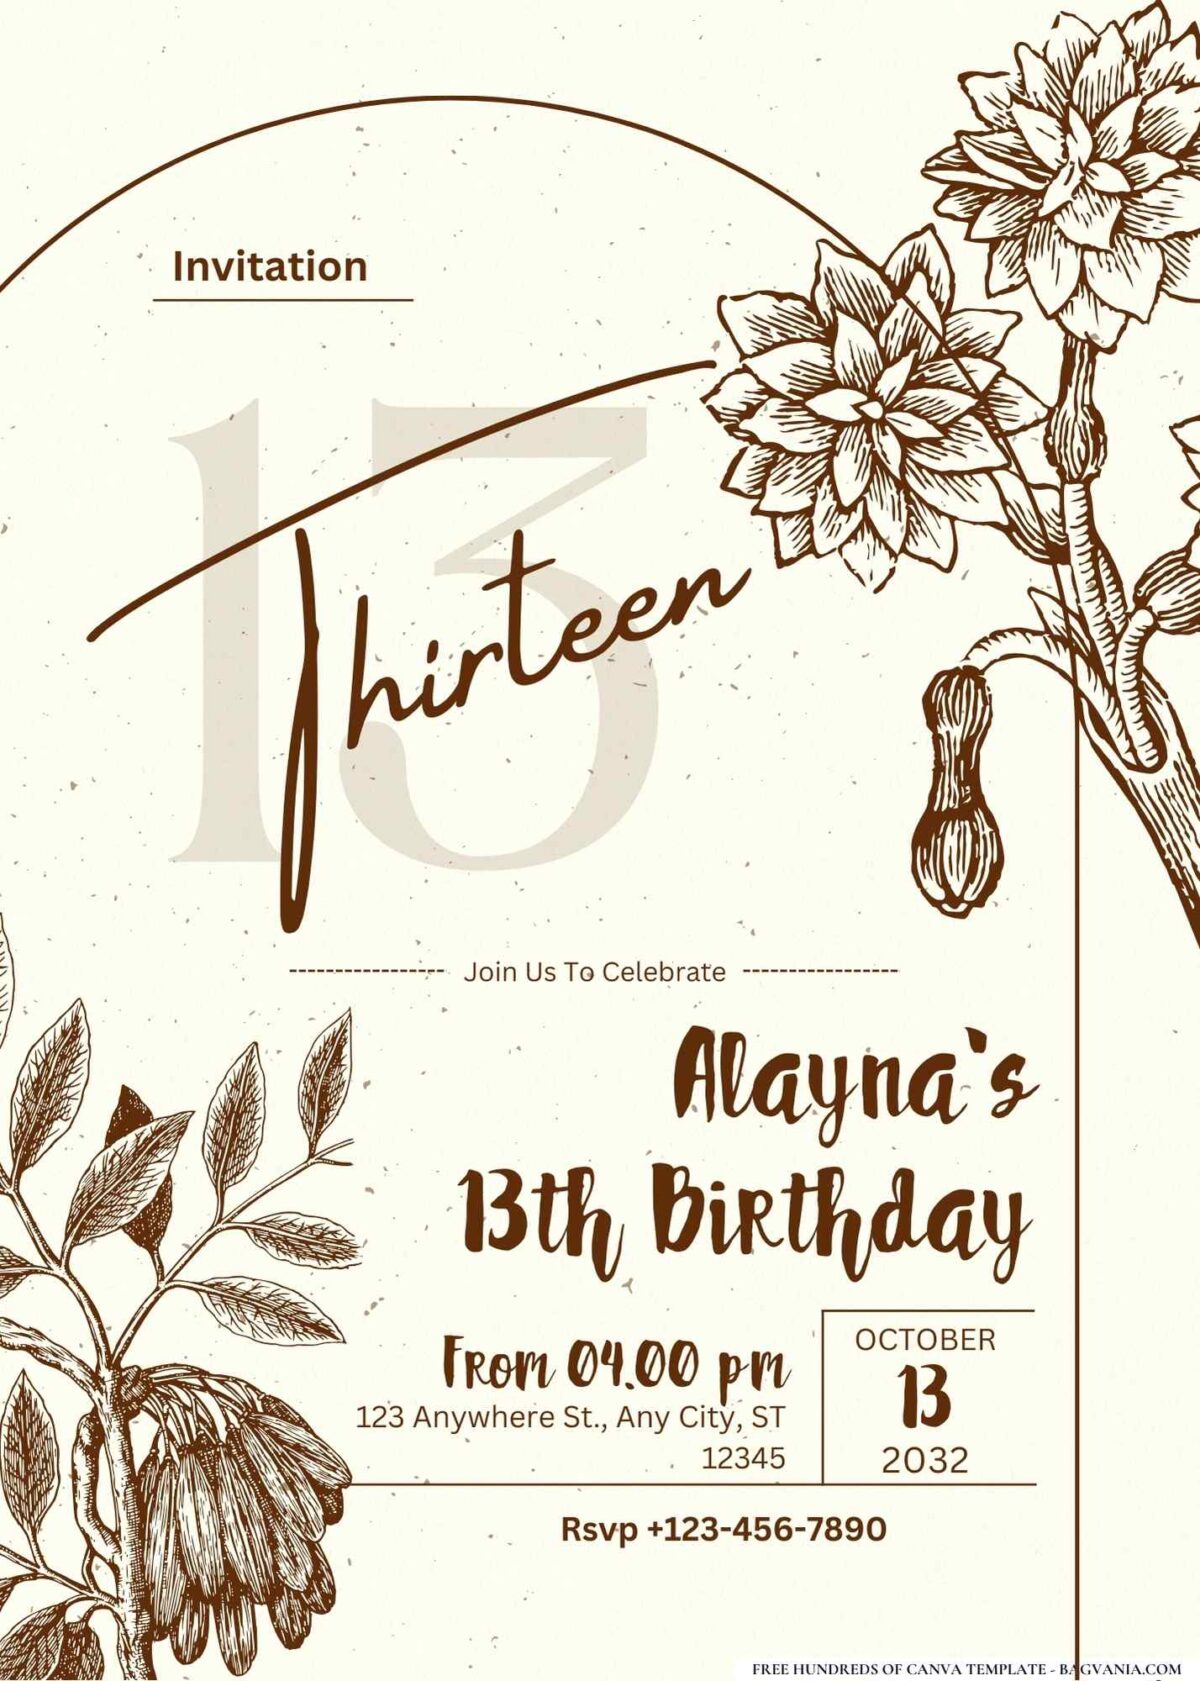 FREE Editable Vintage Postcard Flowers Birthday Invitation